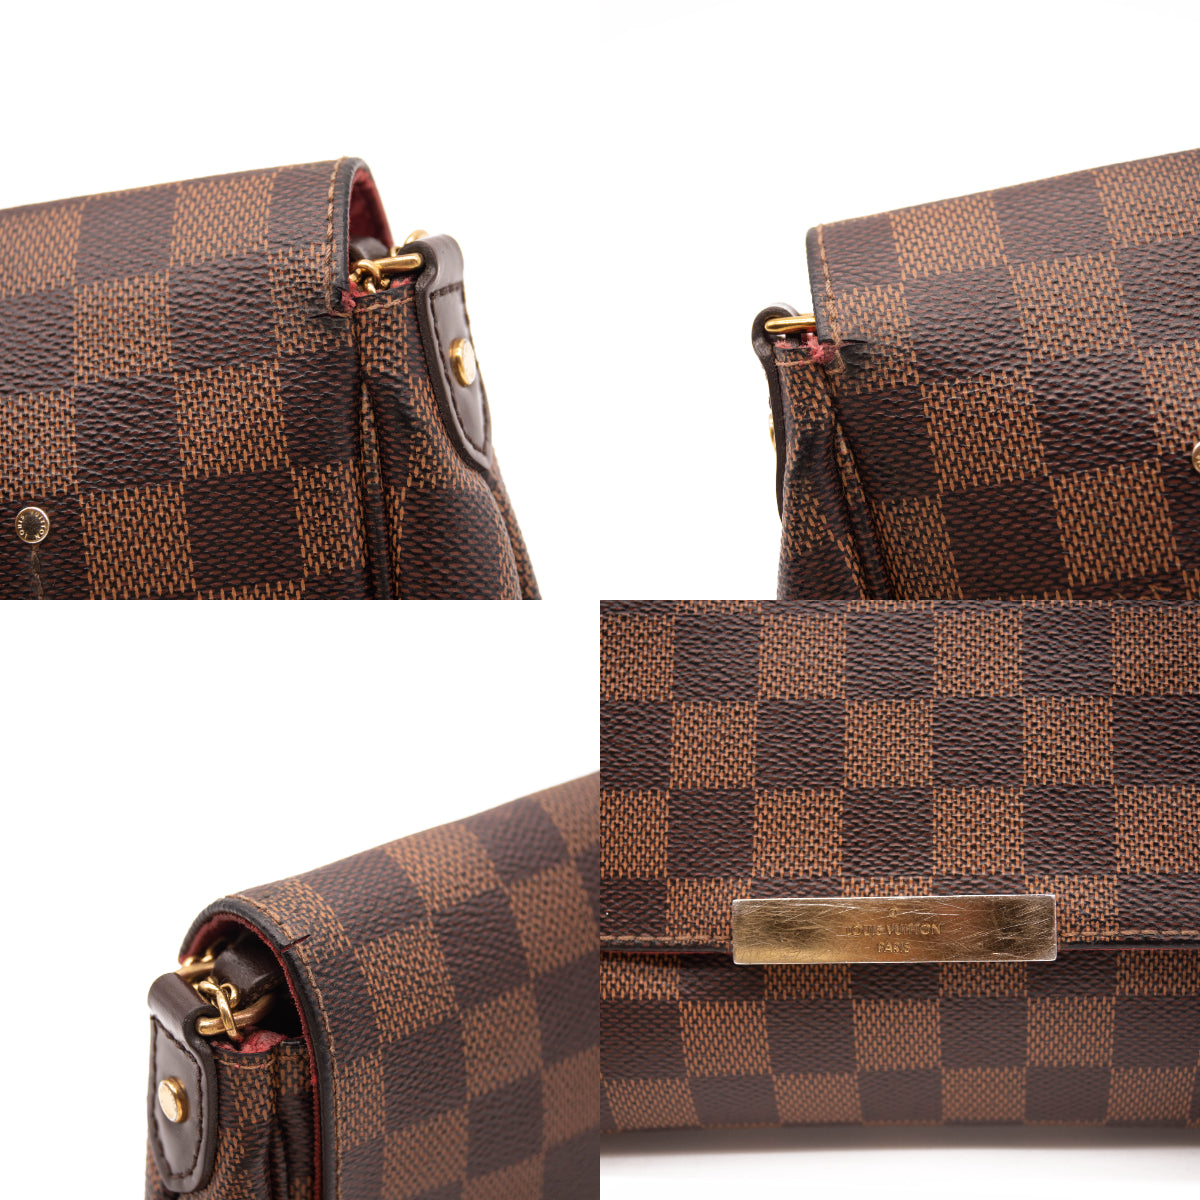 Louis Vuitton Favourtie mm Shoulder Bag in Damier Ebene Canvas